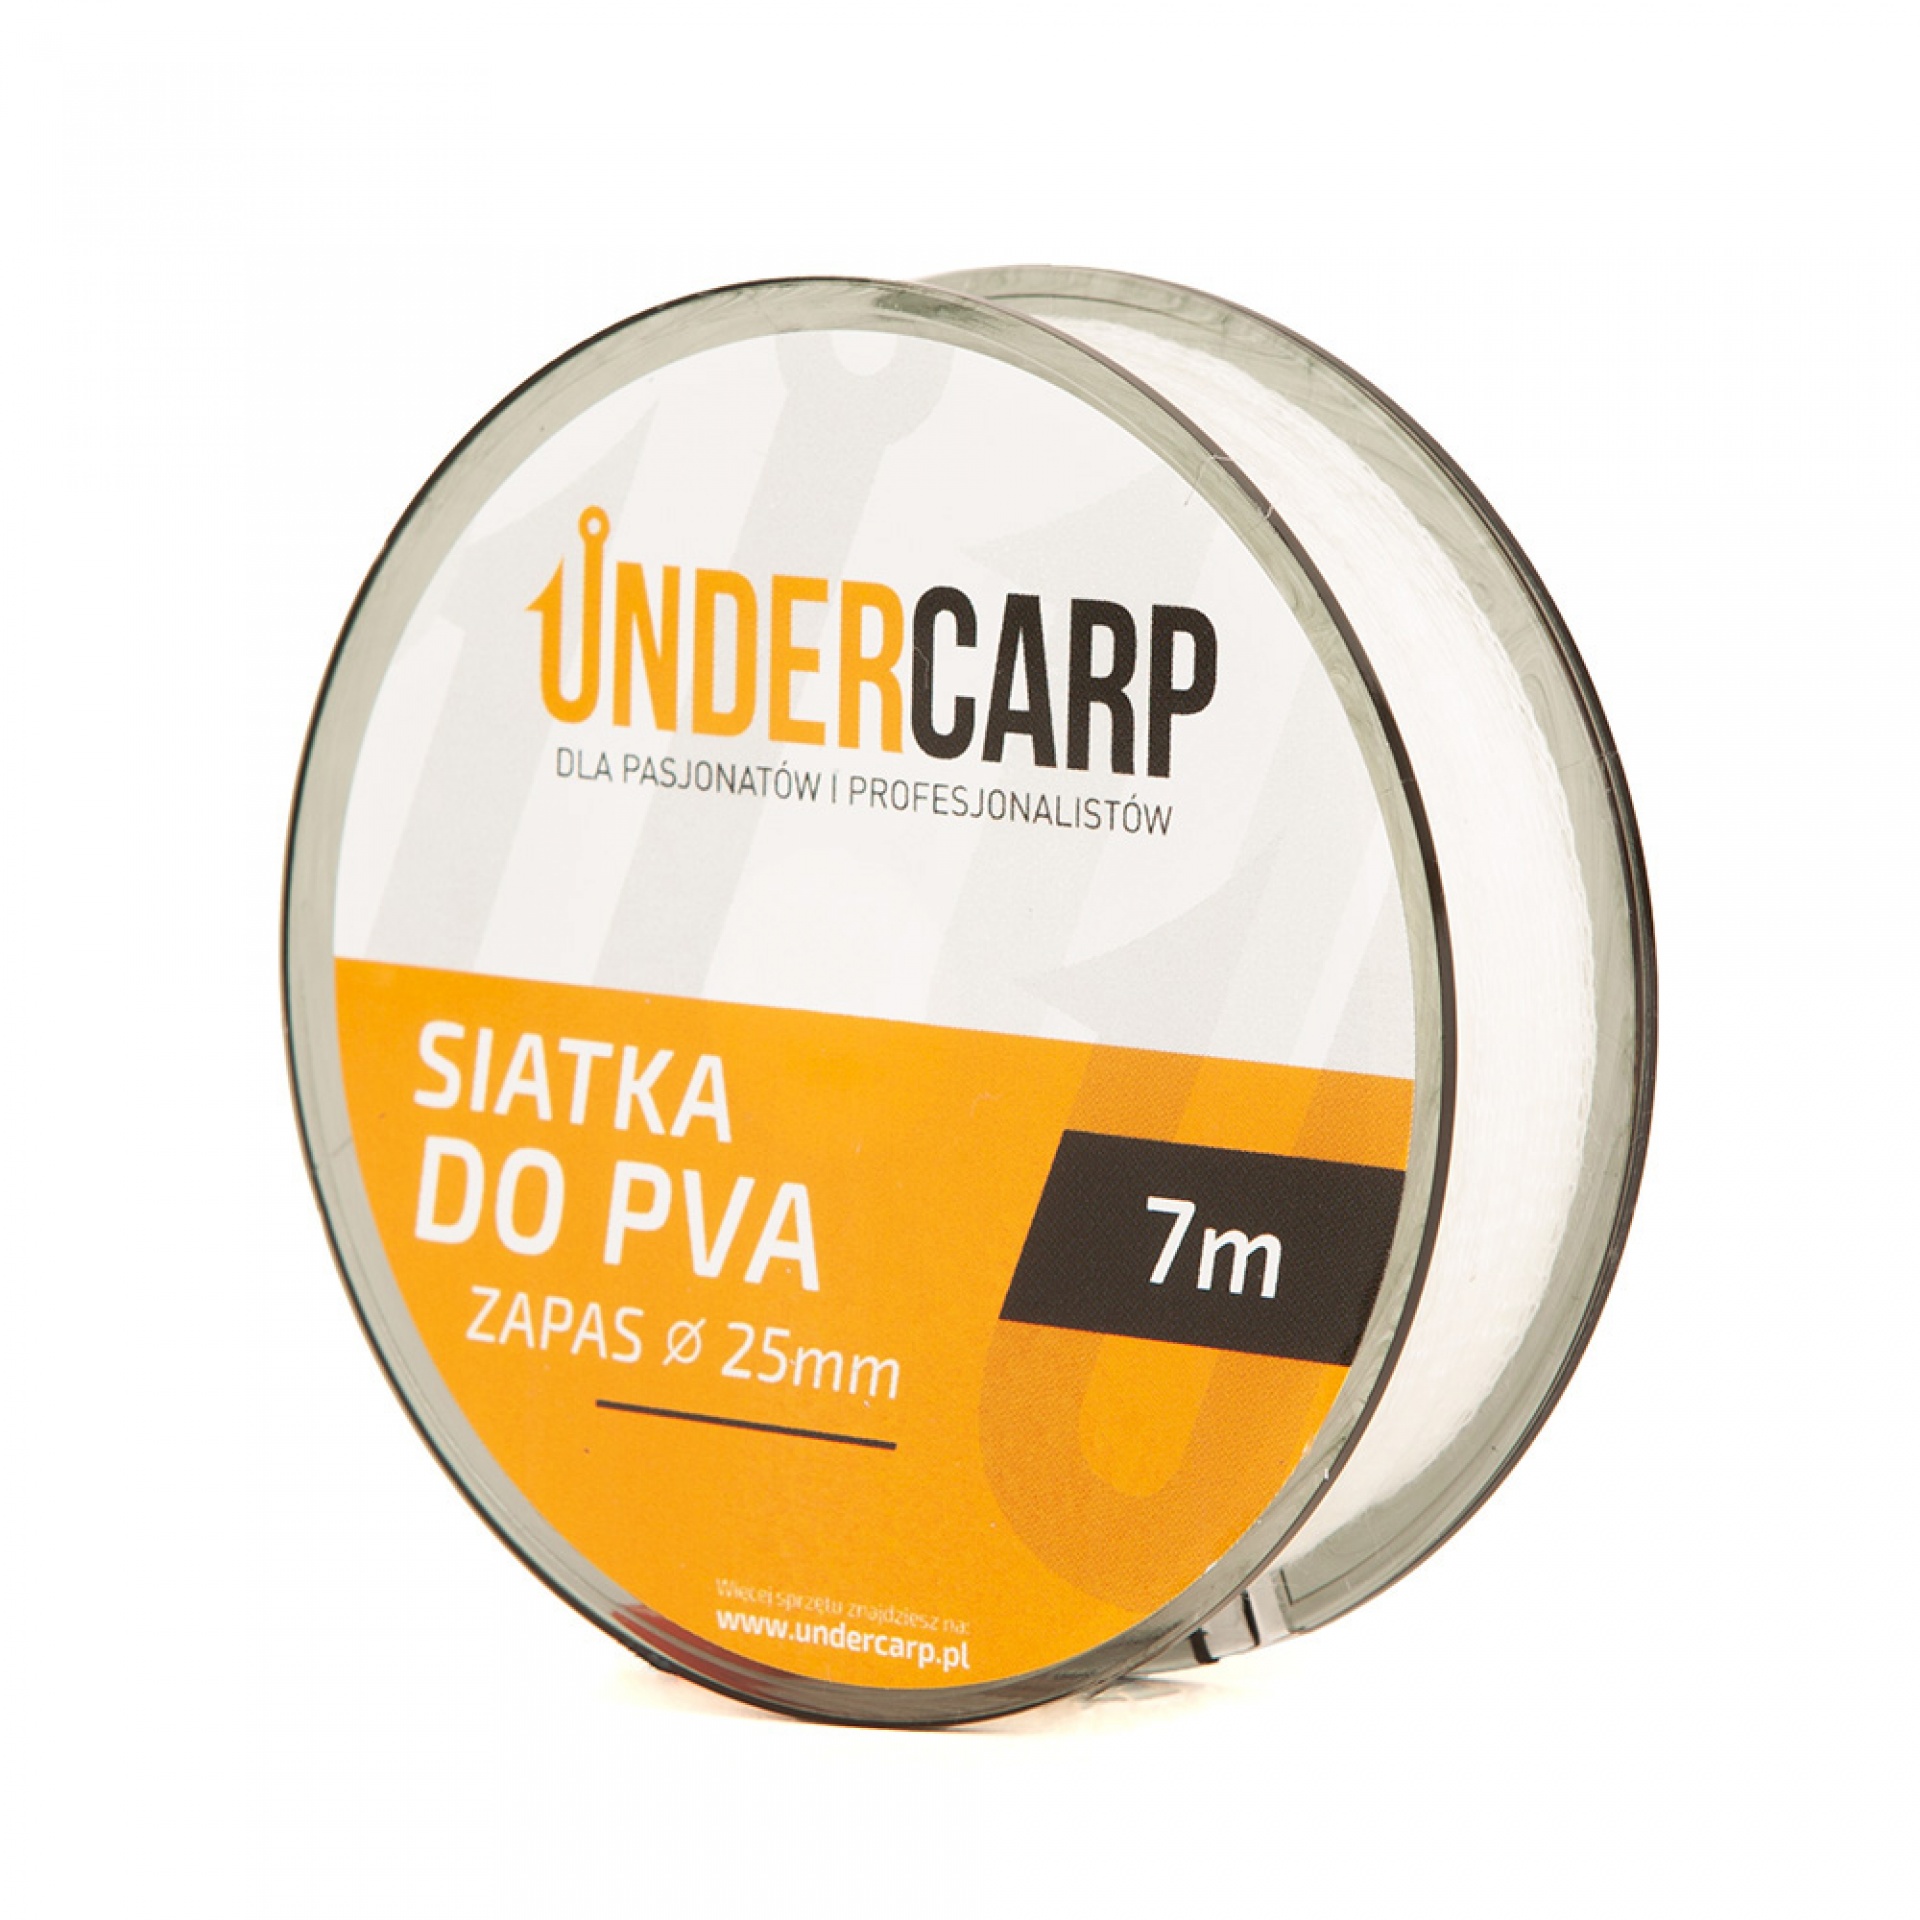 UnderCarp - Ersatz PVA-Netz 25mm 7m